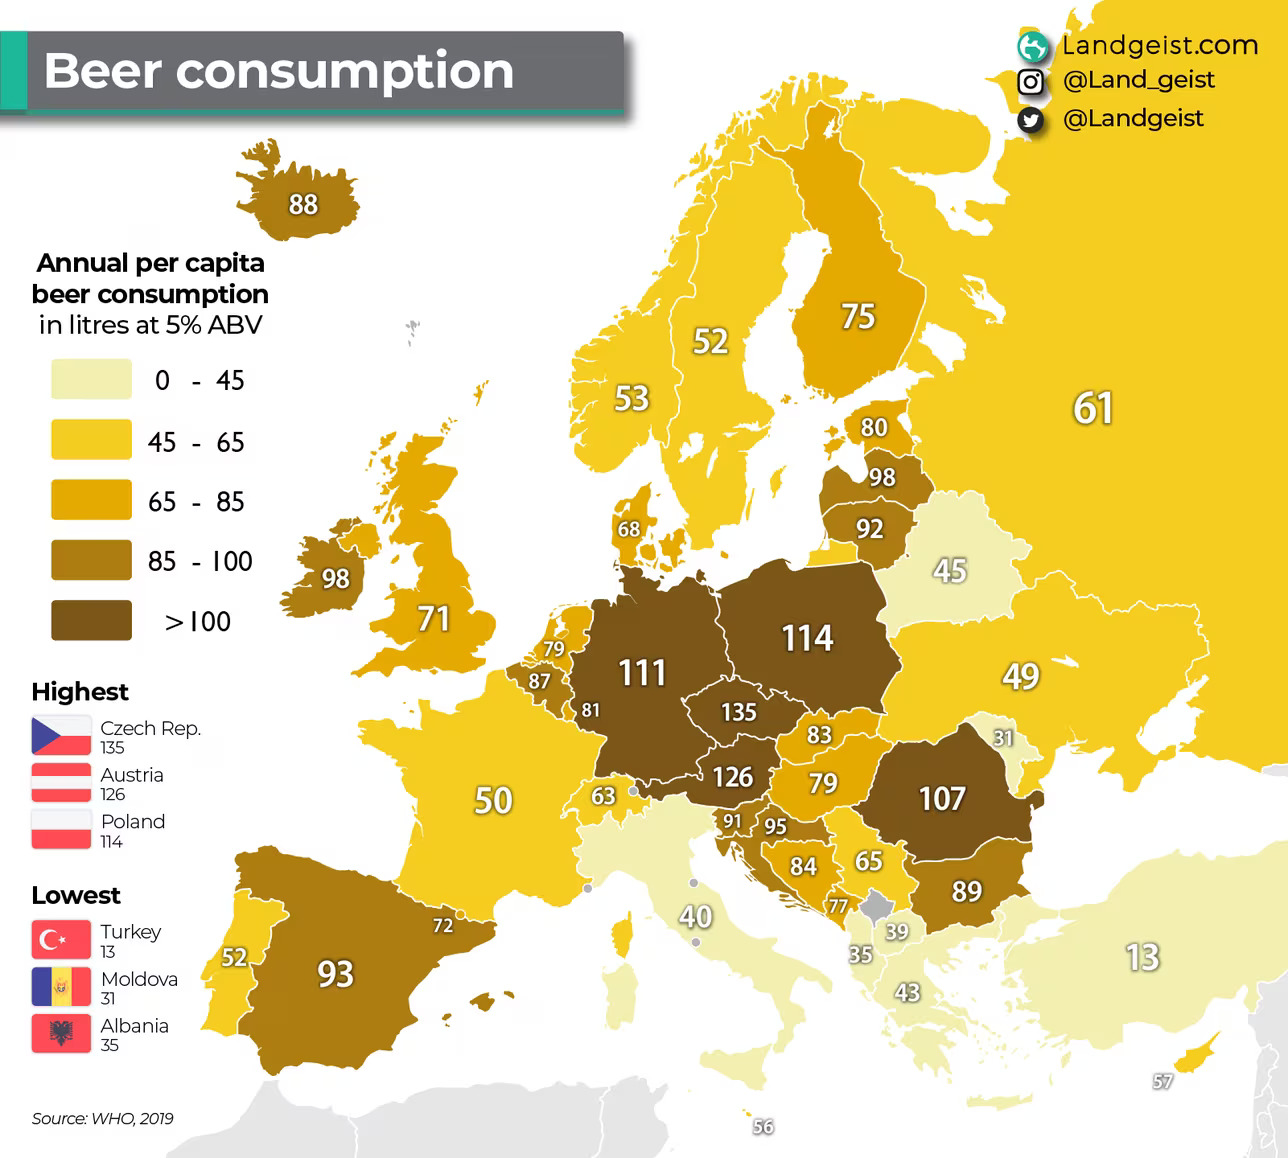 χαρτης μπυρας